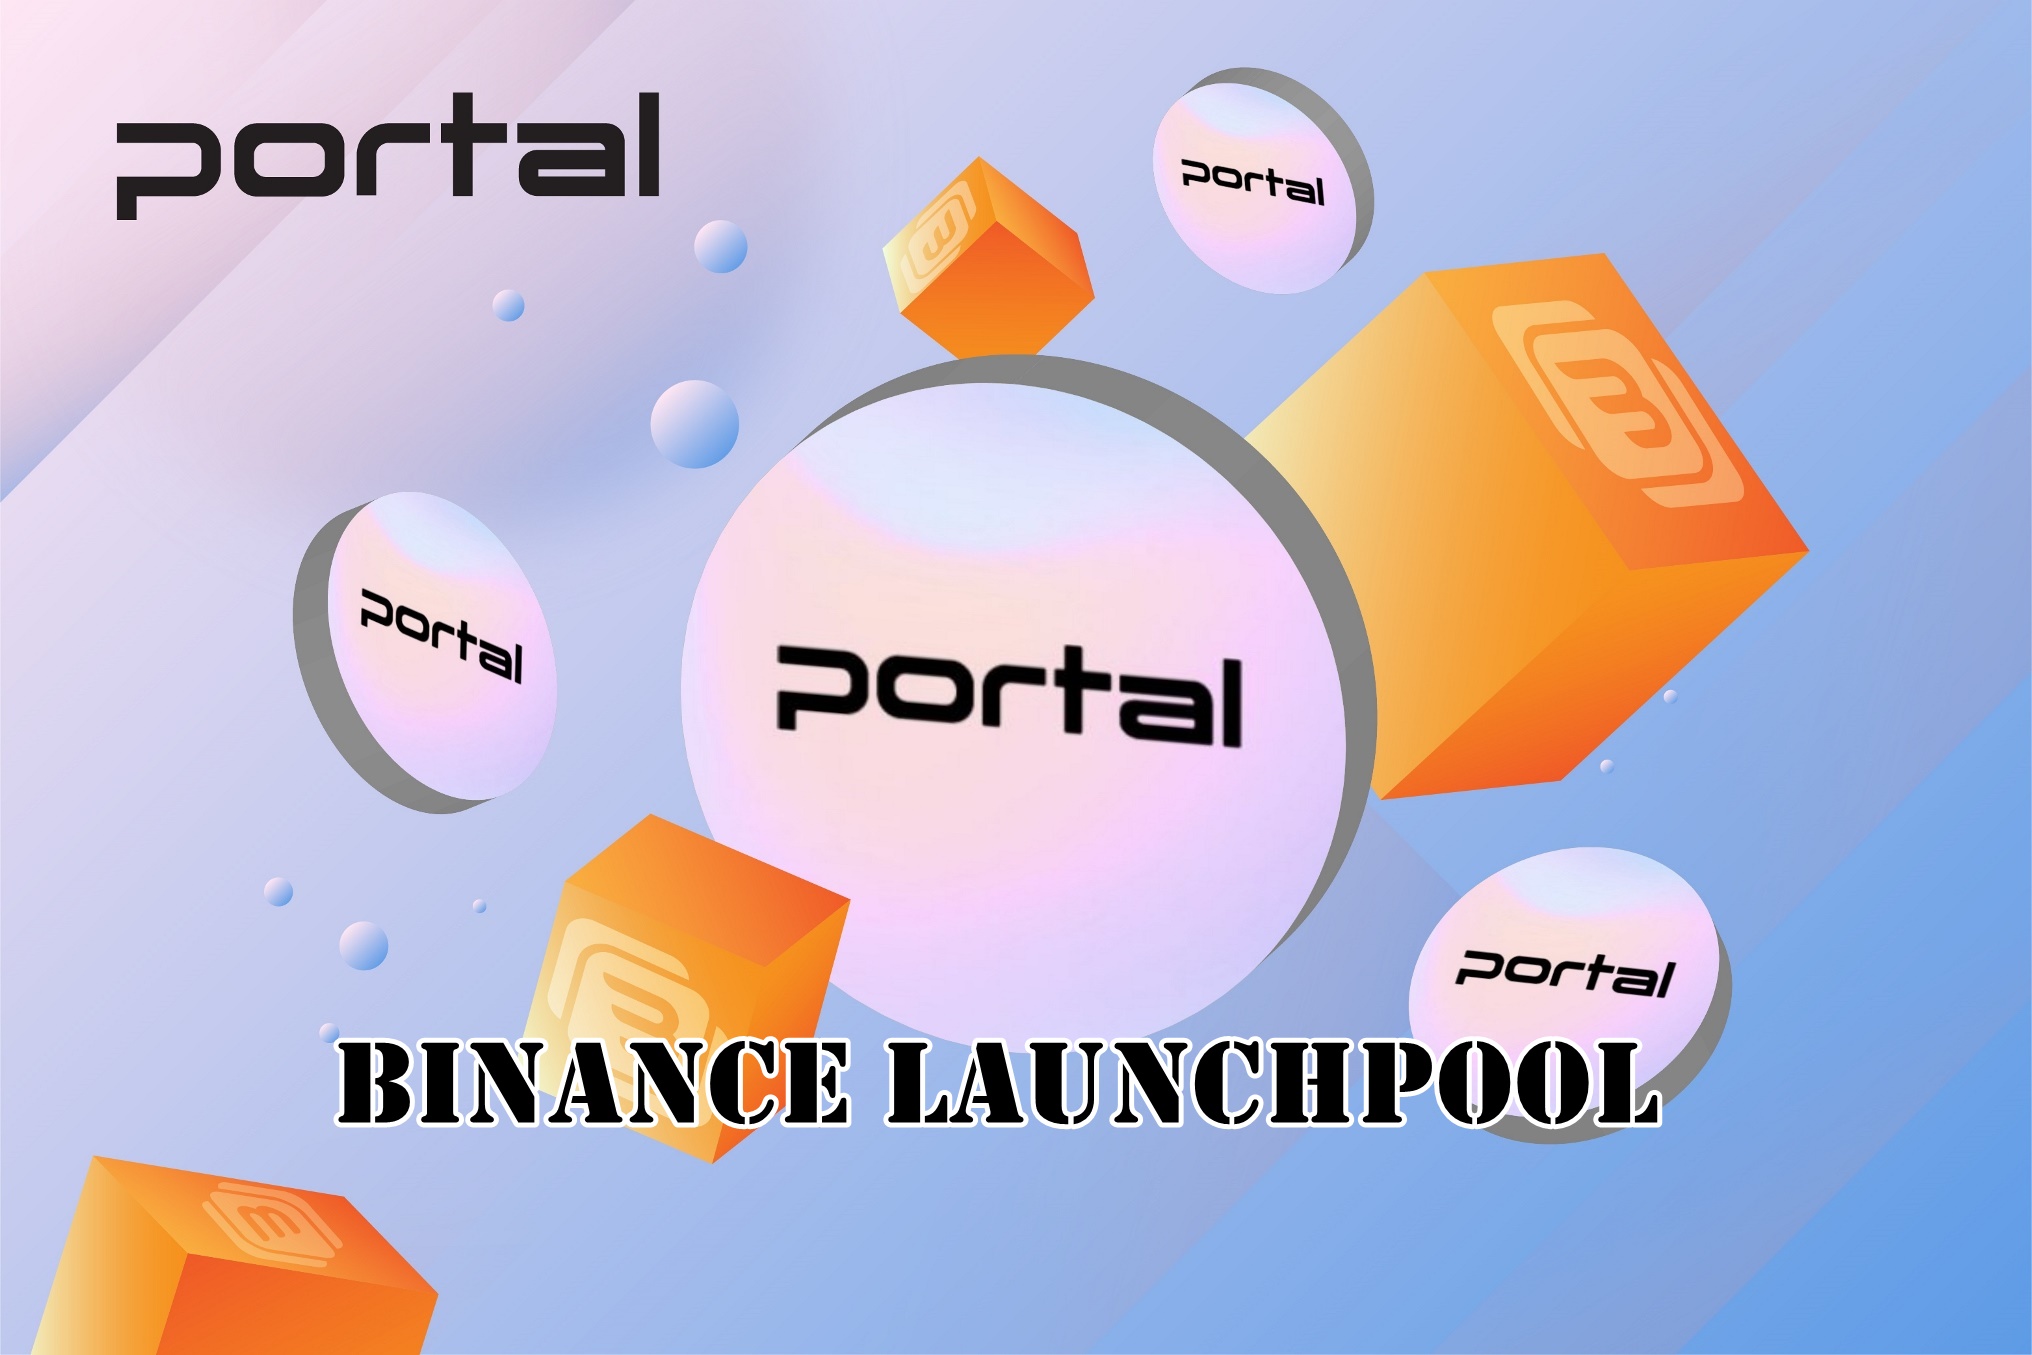 Portal trở thành dự án thứ 47 trên Binance Launchpool